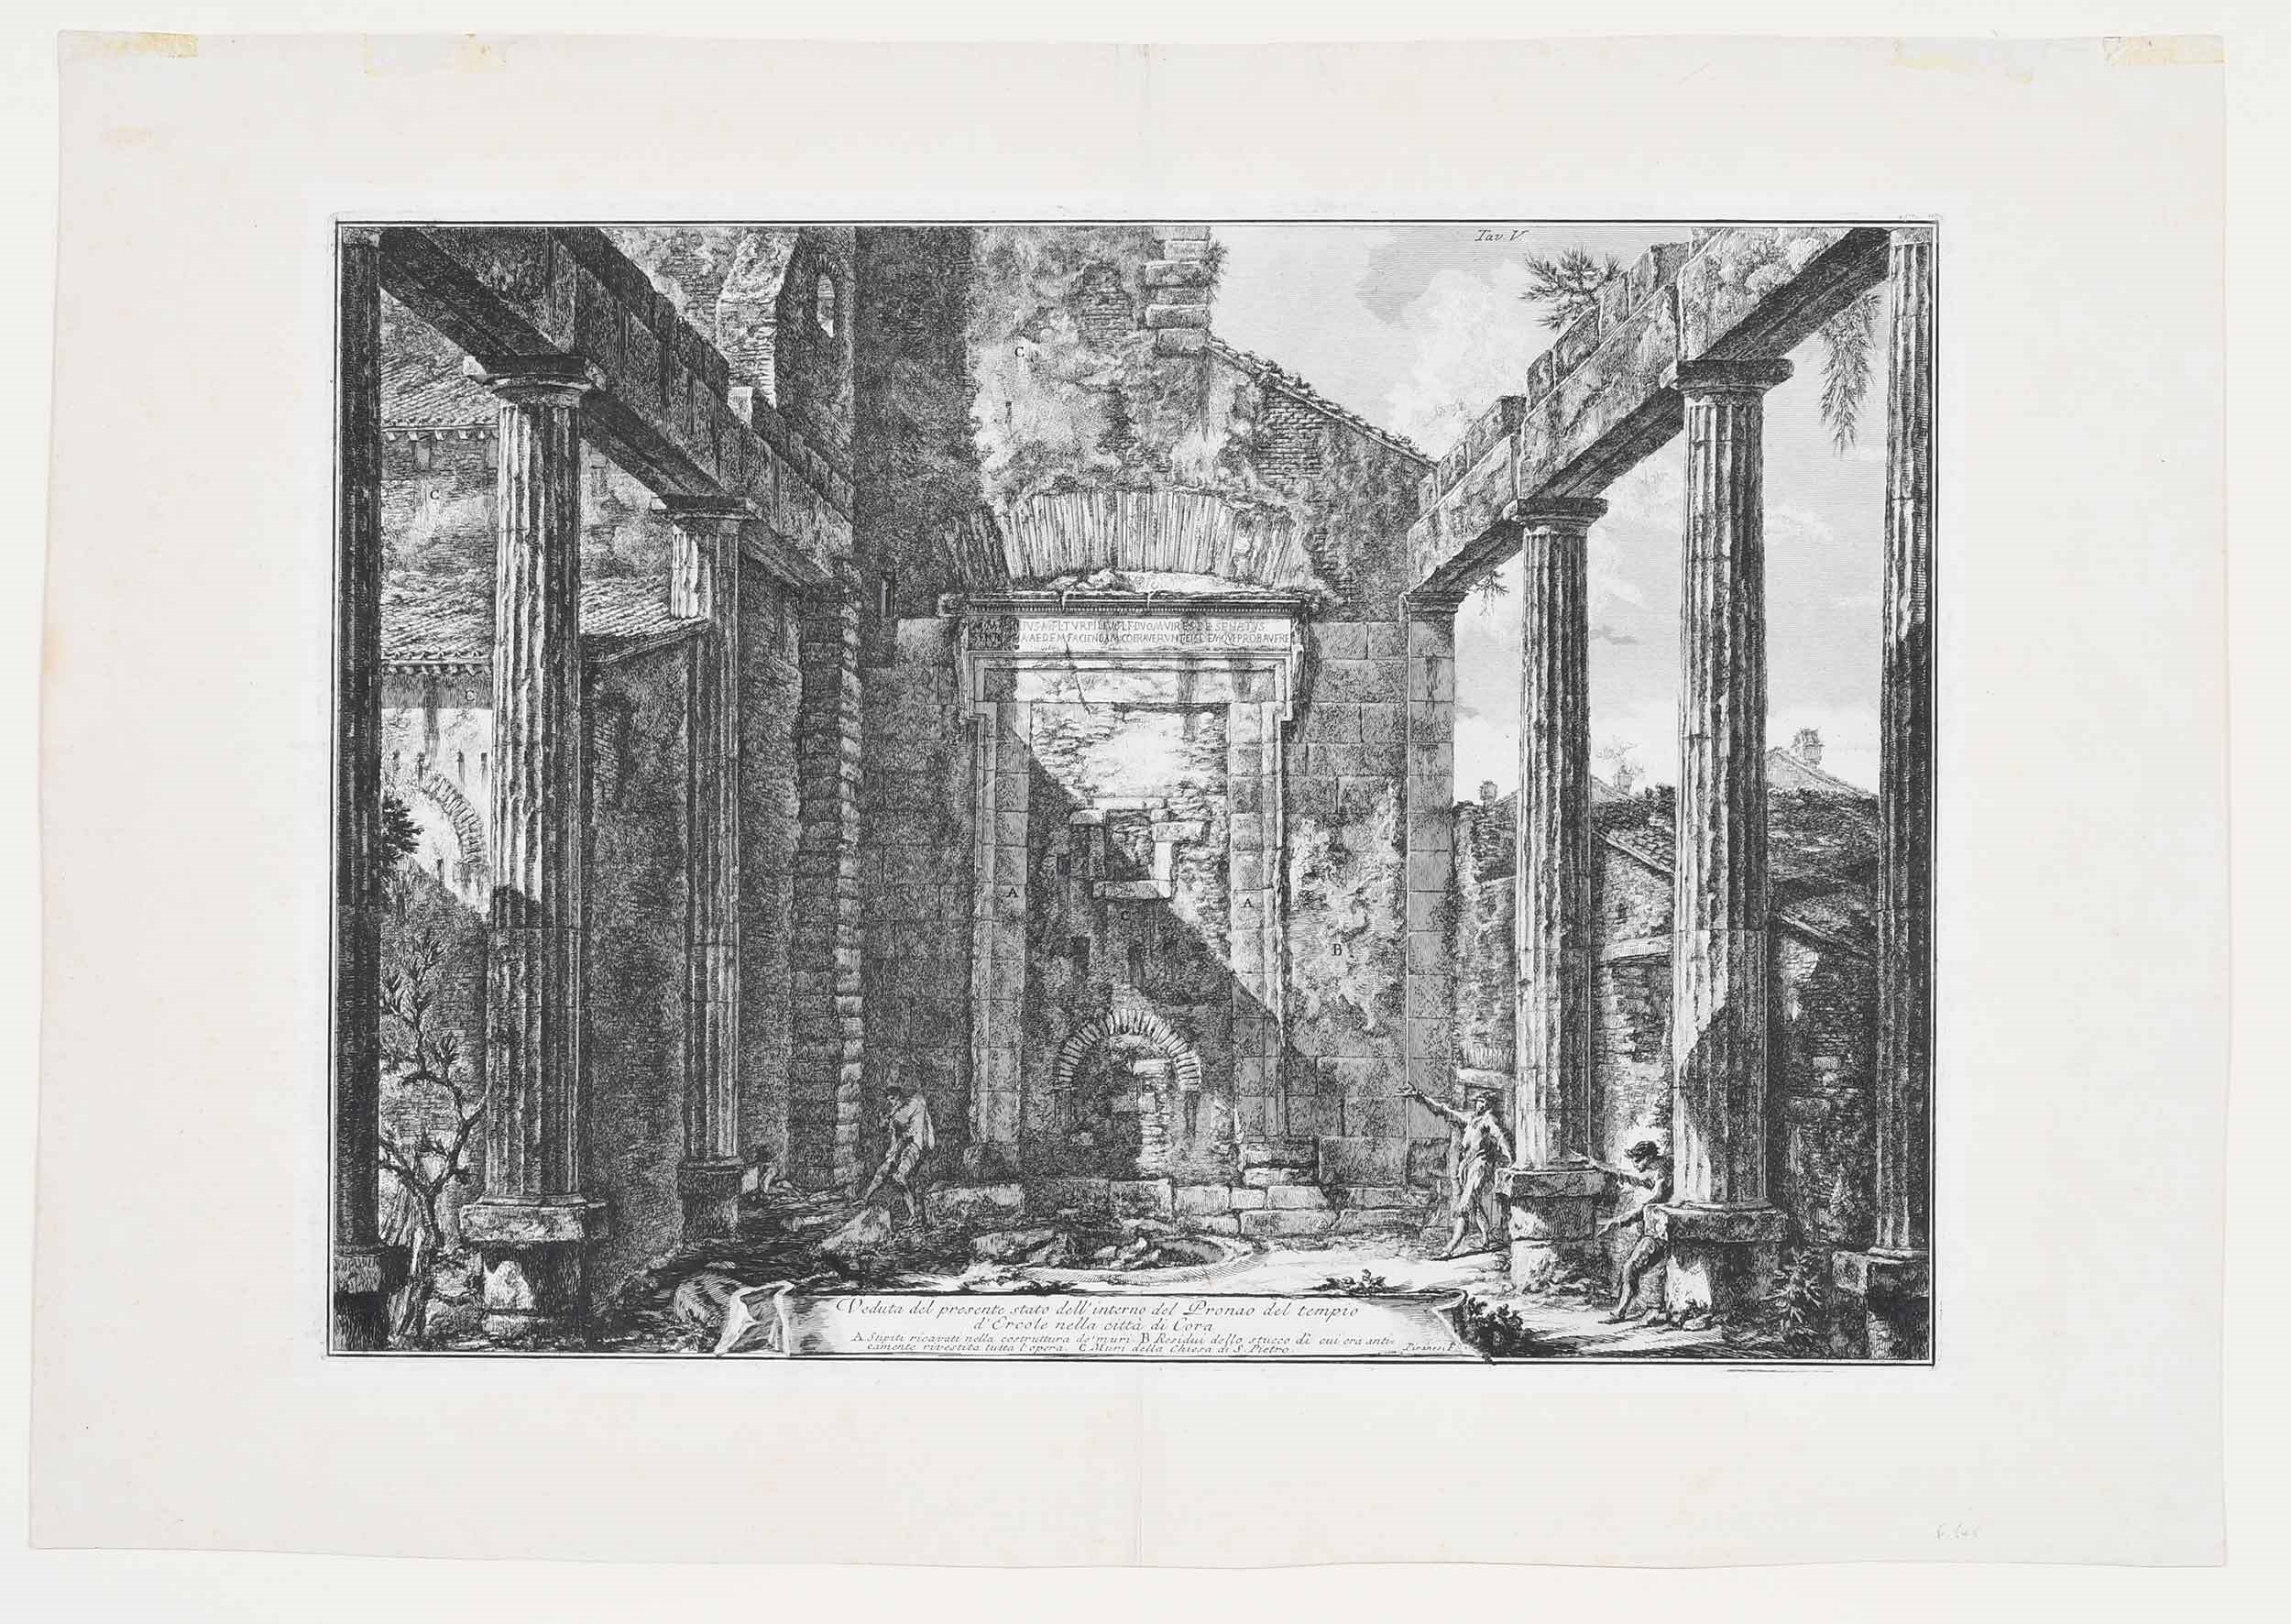 Artwork by Giovanni Battista Piranesi, Veduta del presente stato dell'interno del Pronao del tempio d'Ercole nella citta di Cora, Made of etching on laid paper